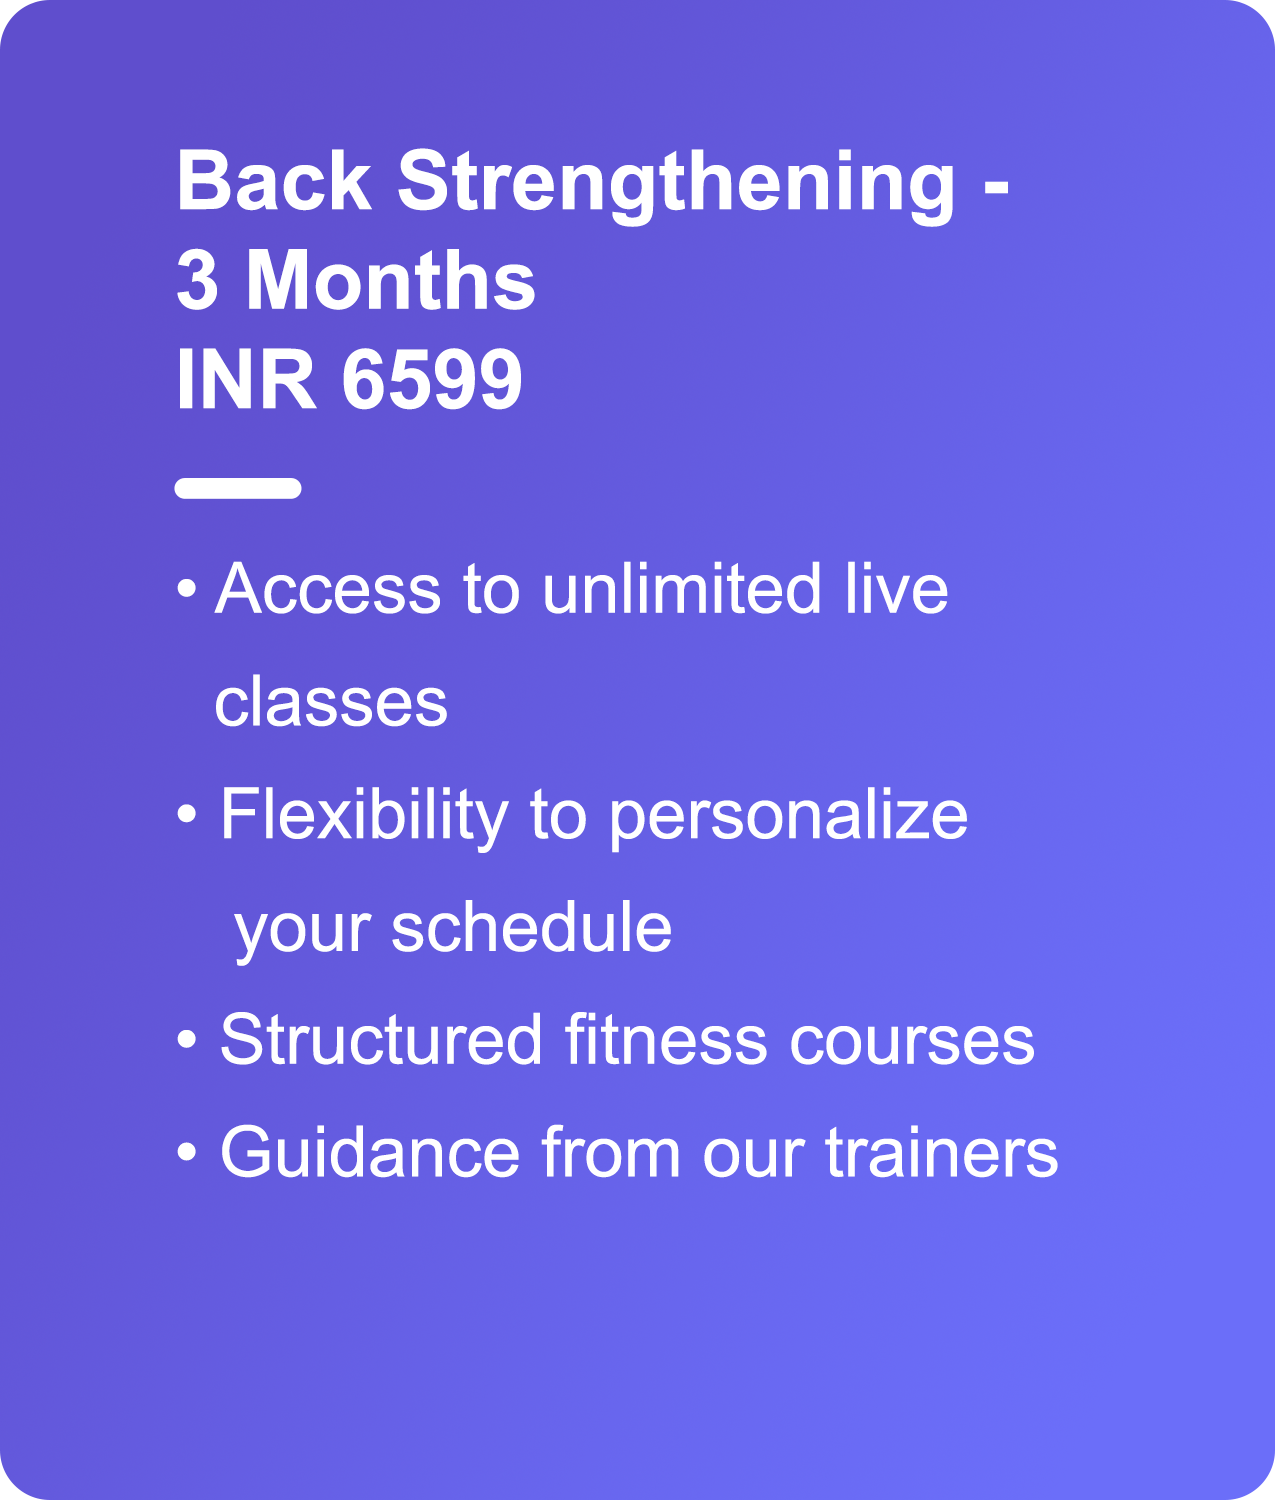 Yoga For Back Strengthening - Yogwise